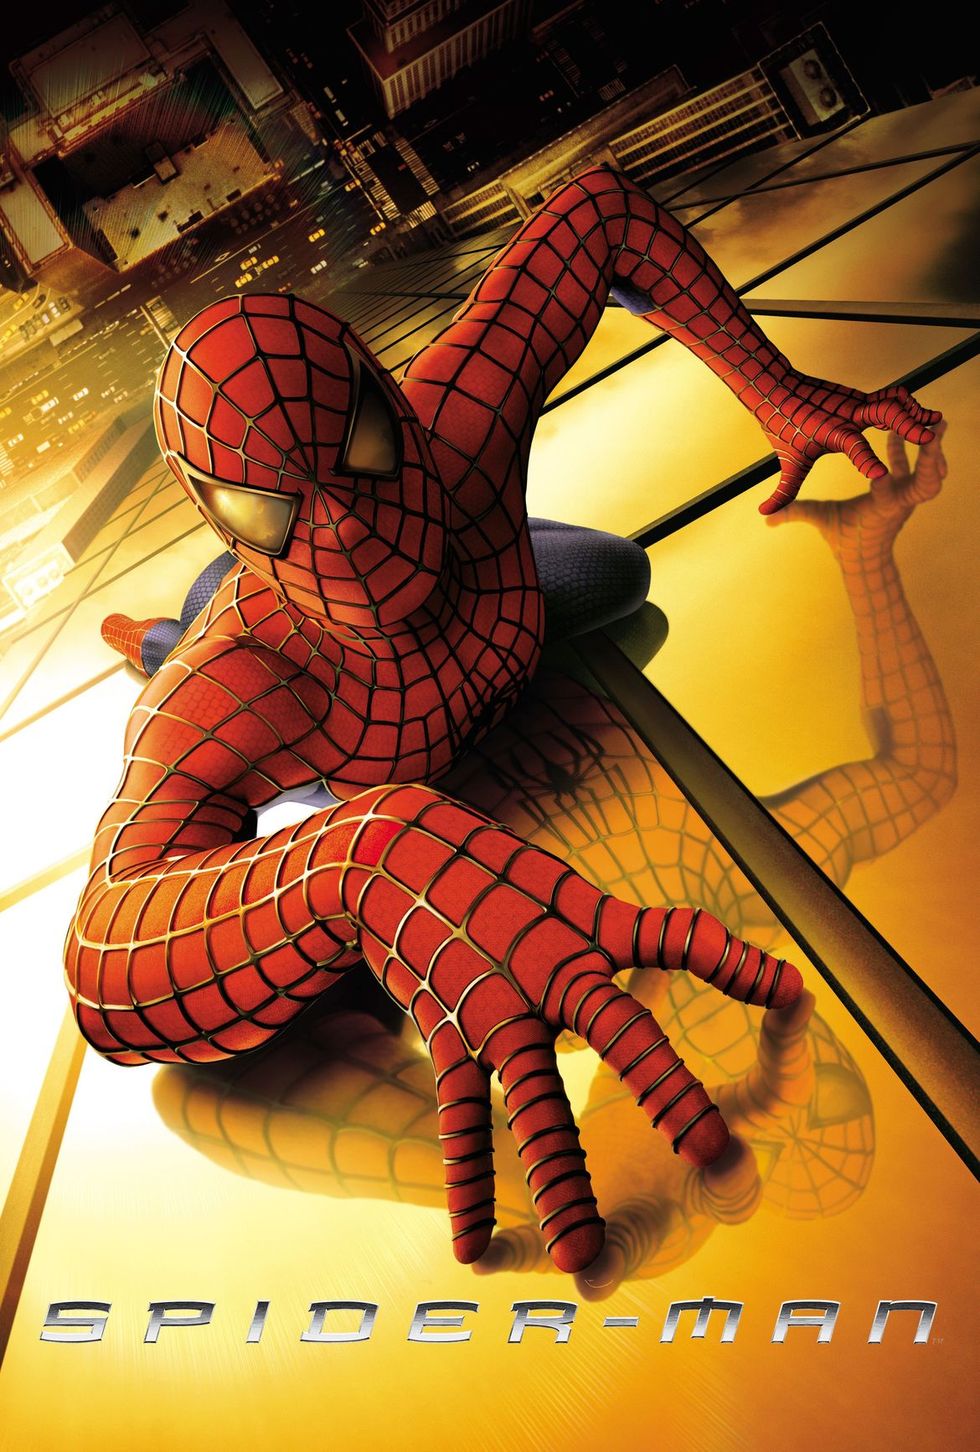 Spider-Man (2002) - Best Thanksgiving Movies